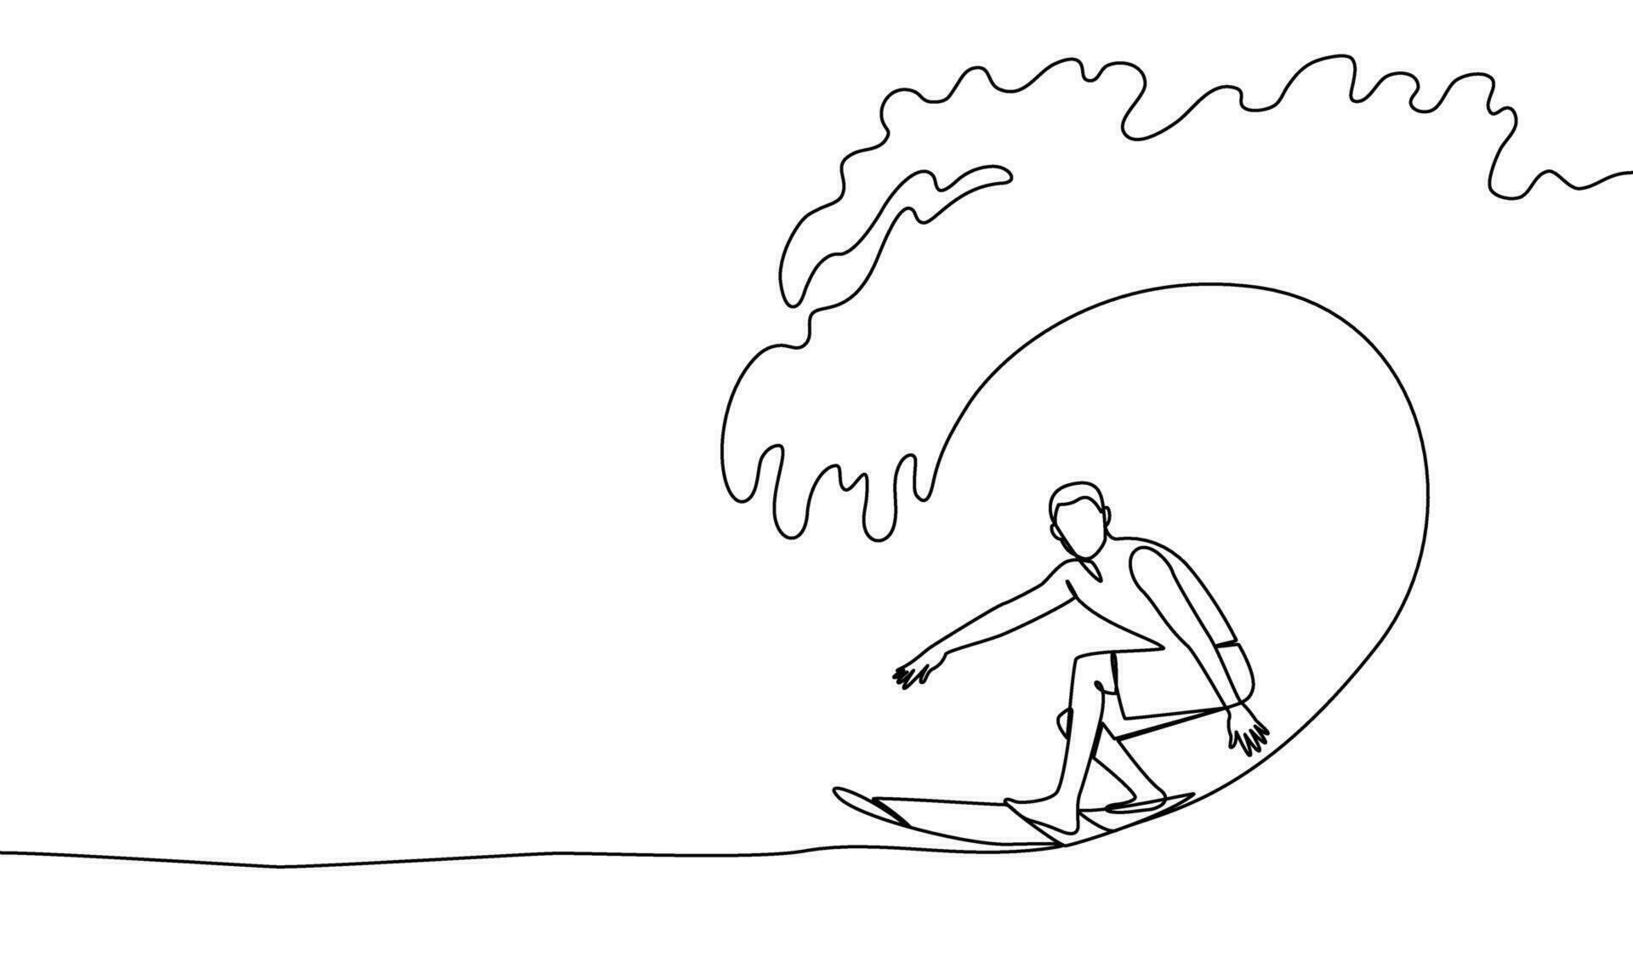 soltero continuo línea de profesional tablista en el Oceano ola. surf. agua, ola, captura un ola. uno línea dibujo vector ilustración